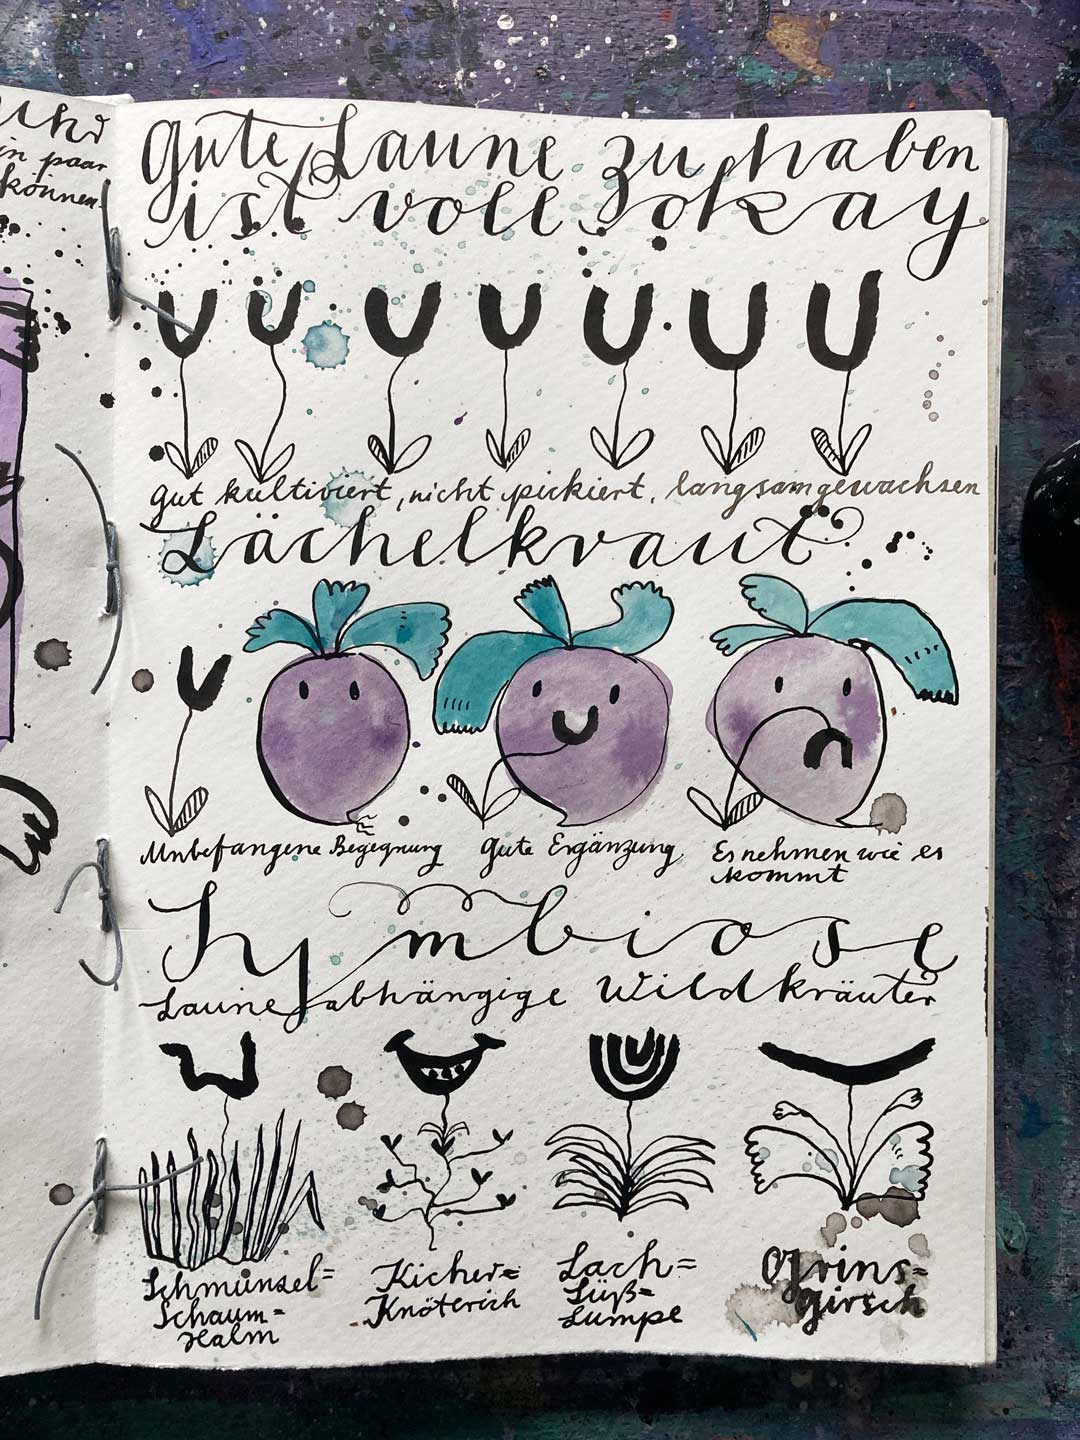 Tadieschen im Skizzenbuch: Eine kleine illustrierte Geschichte am Rande. Wie ernsthaft muss Gemüse sein? Lächelkraut, Grinsgirsch und Kicherknöterich entstehen aus der Feder.